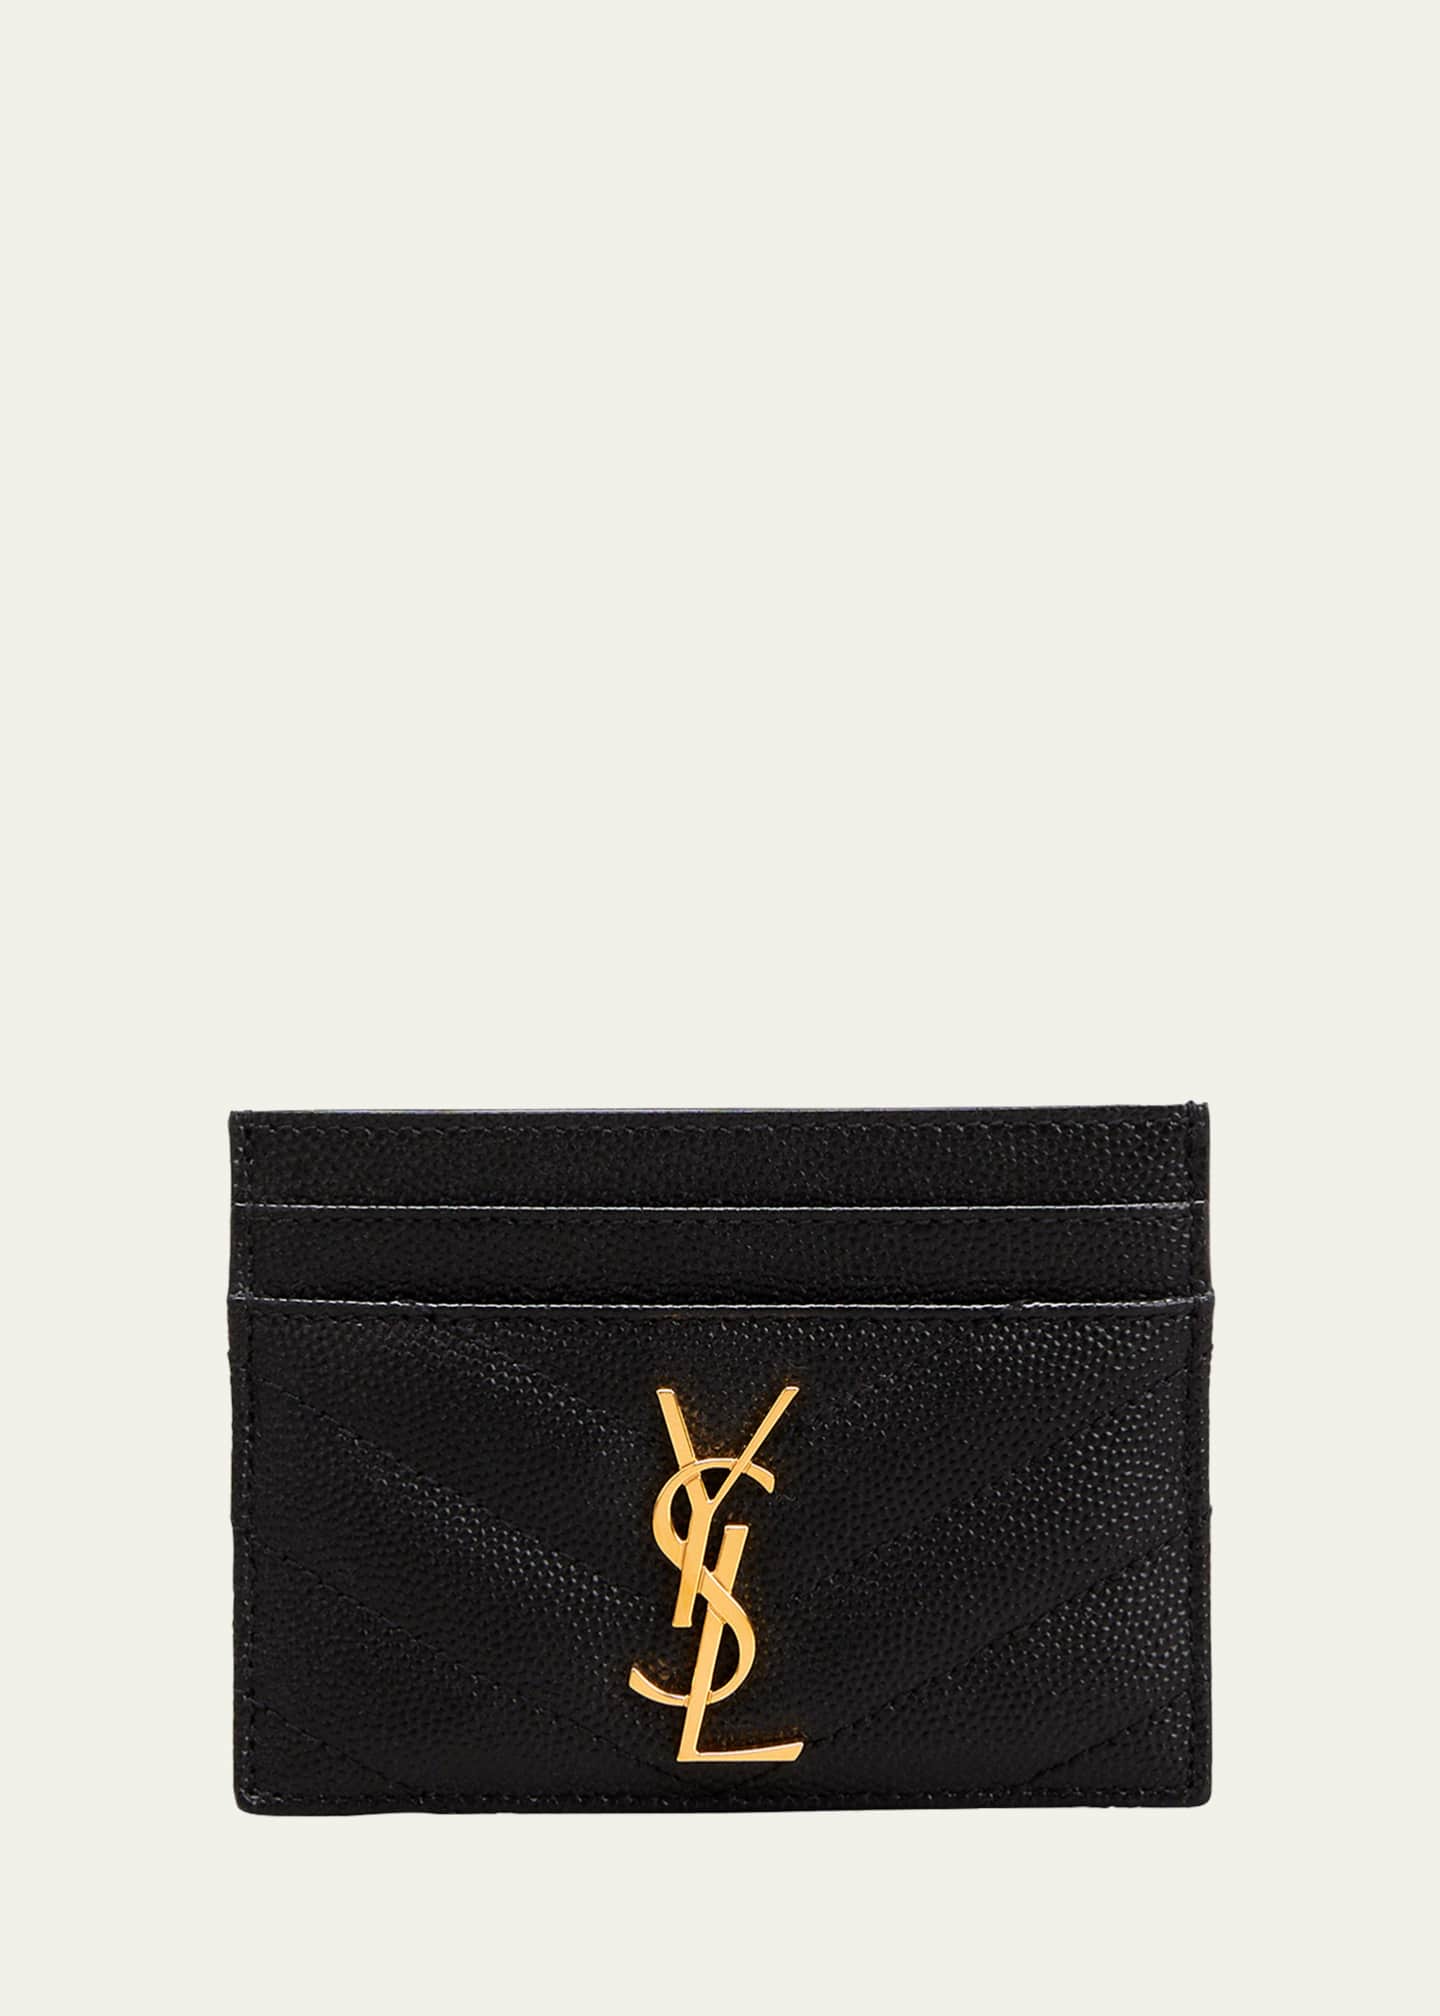 Saint Laurent YSL Grain de Poudre Leather Card Case, Golden Hardware